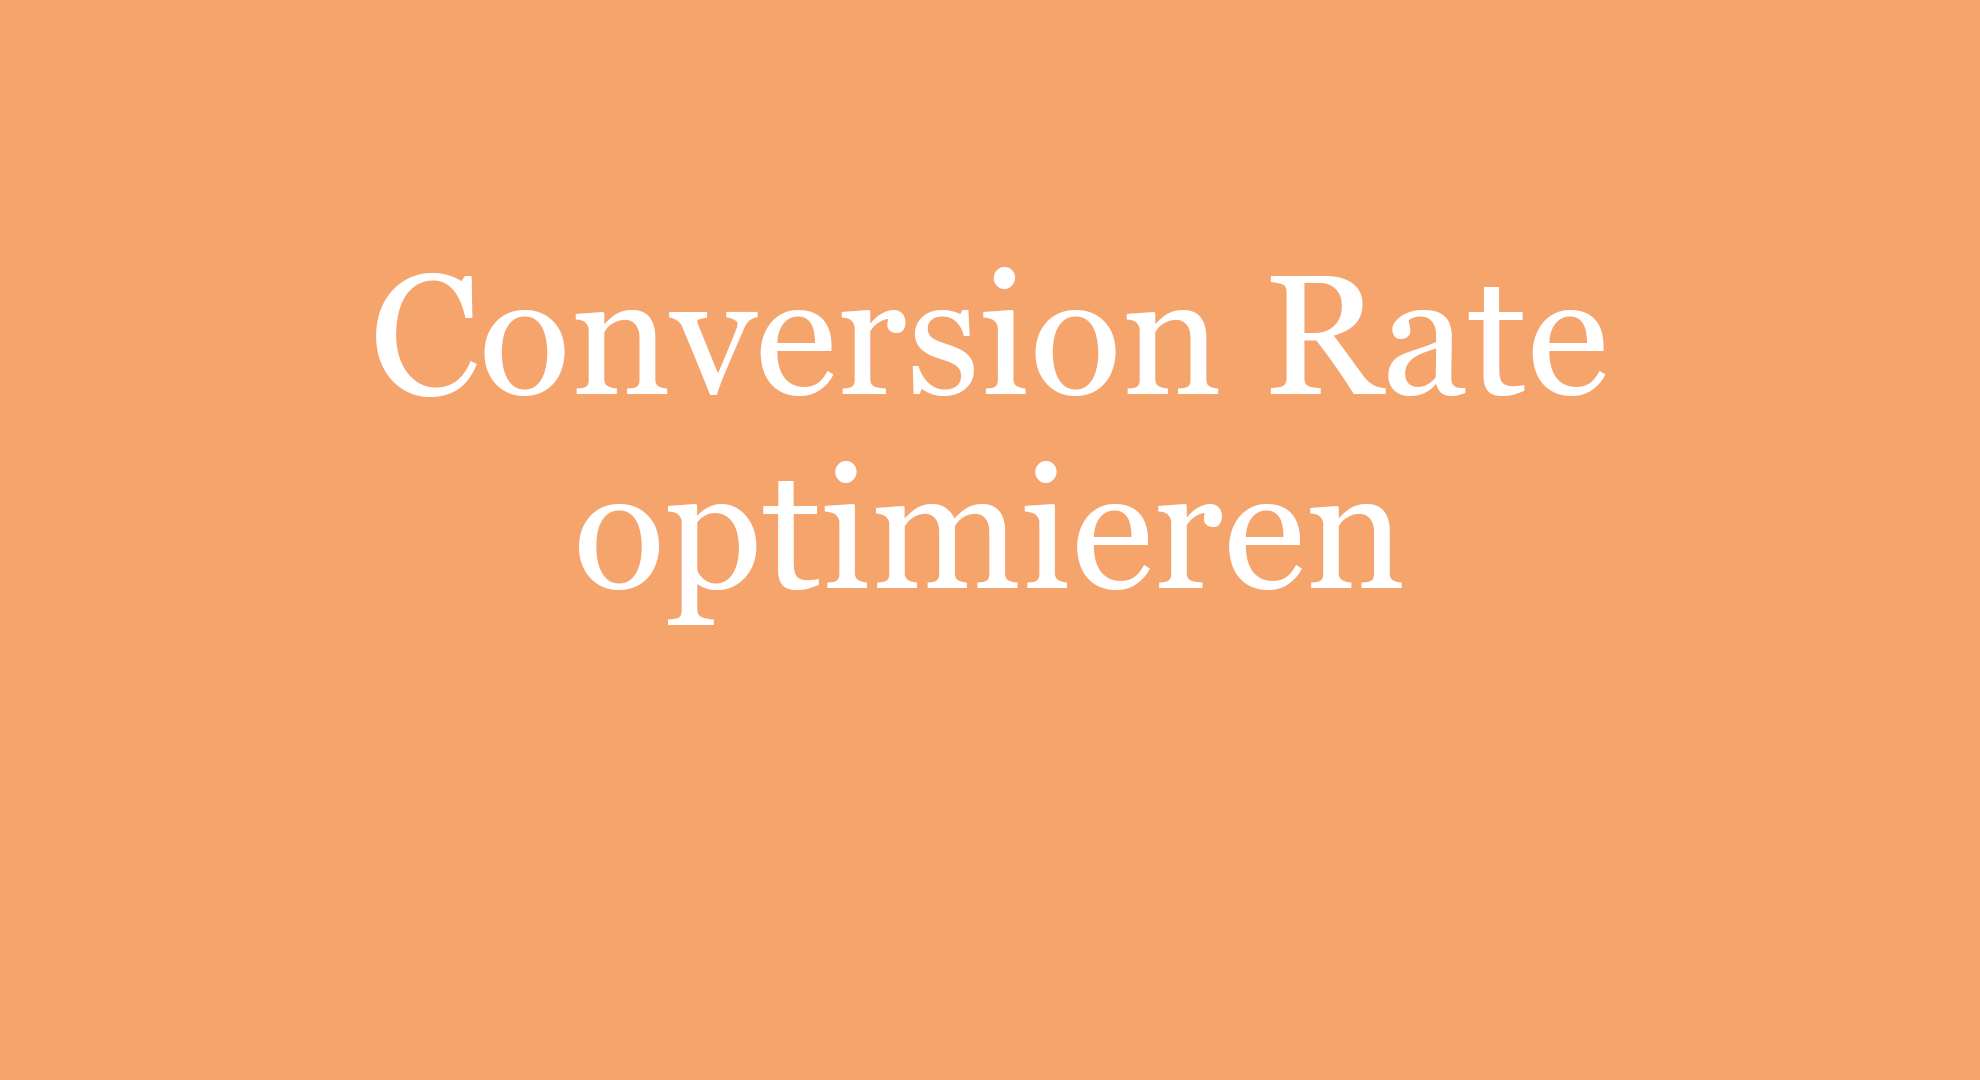 Conversion Rate optimieren